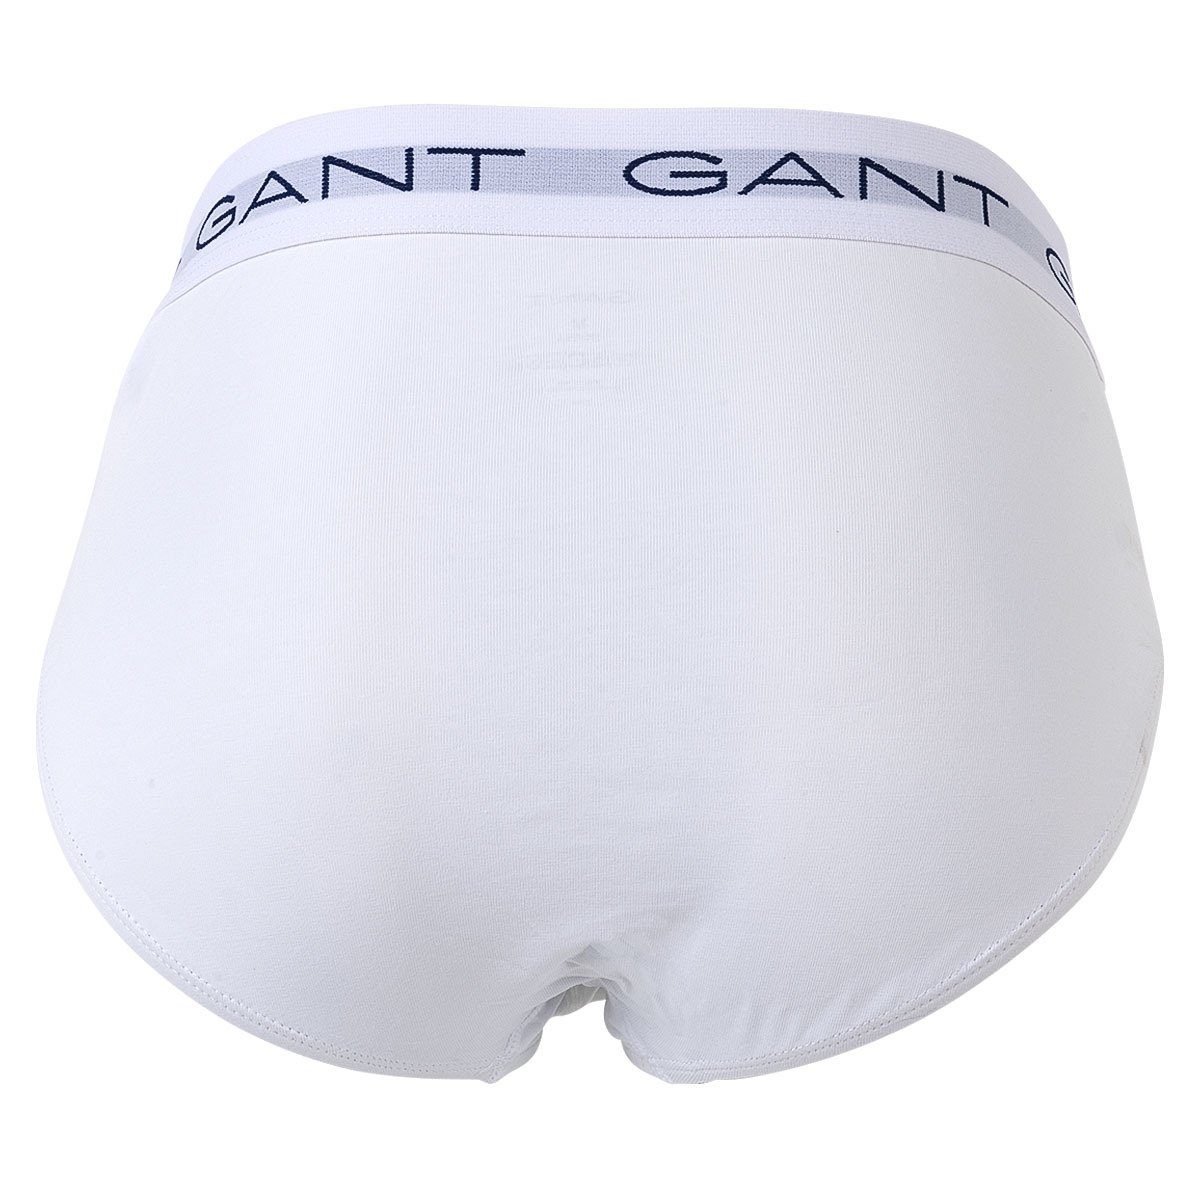 Gant Herren Cotton Briefs, Slips, Pack Grau 3er - Stretch Slip